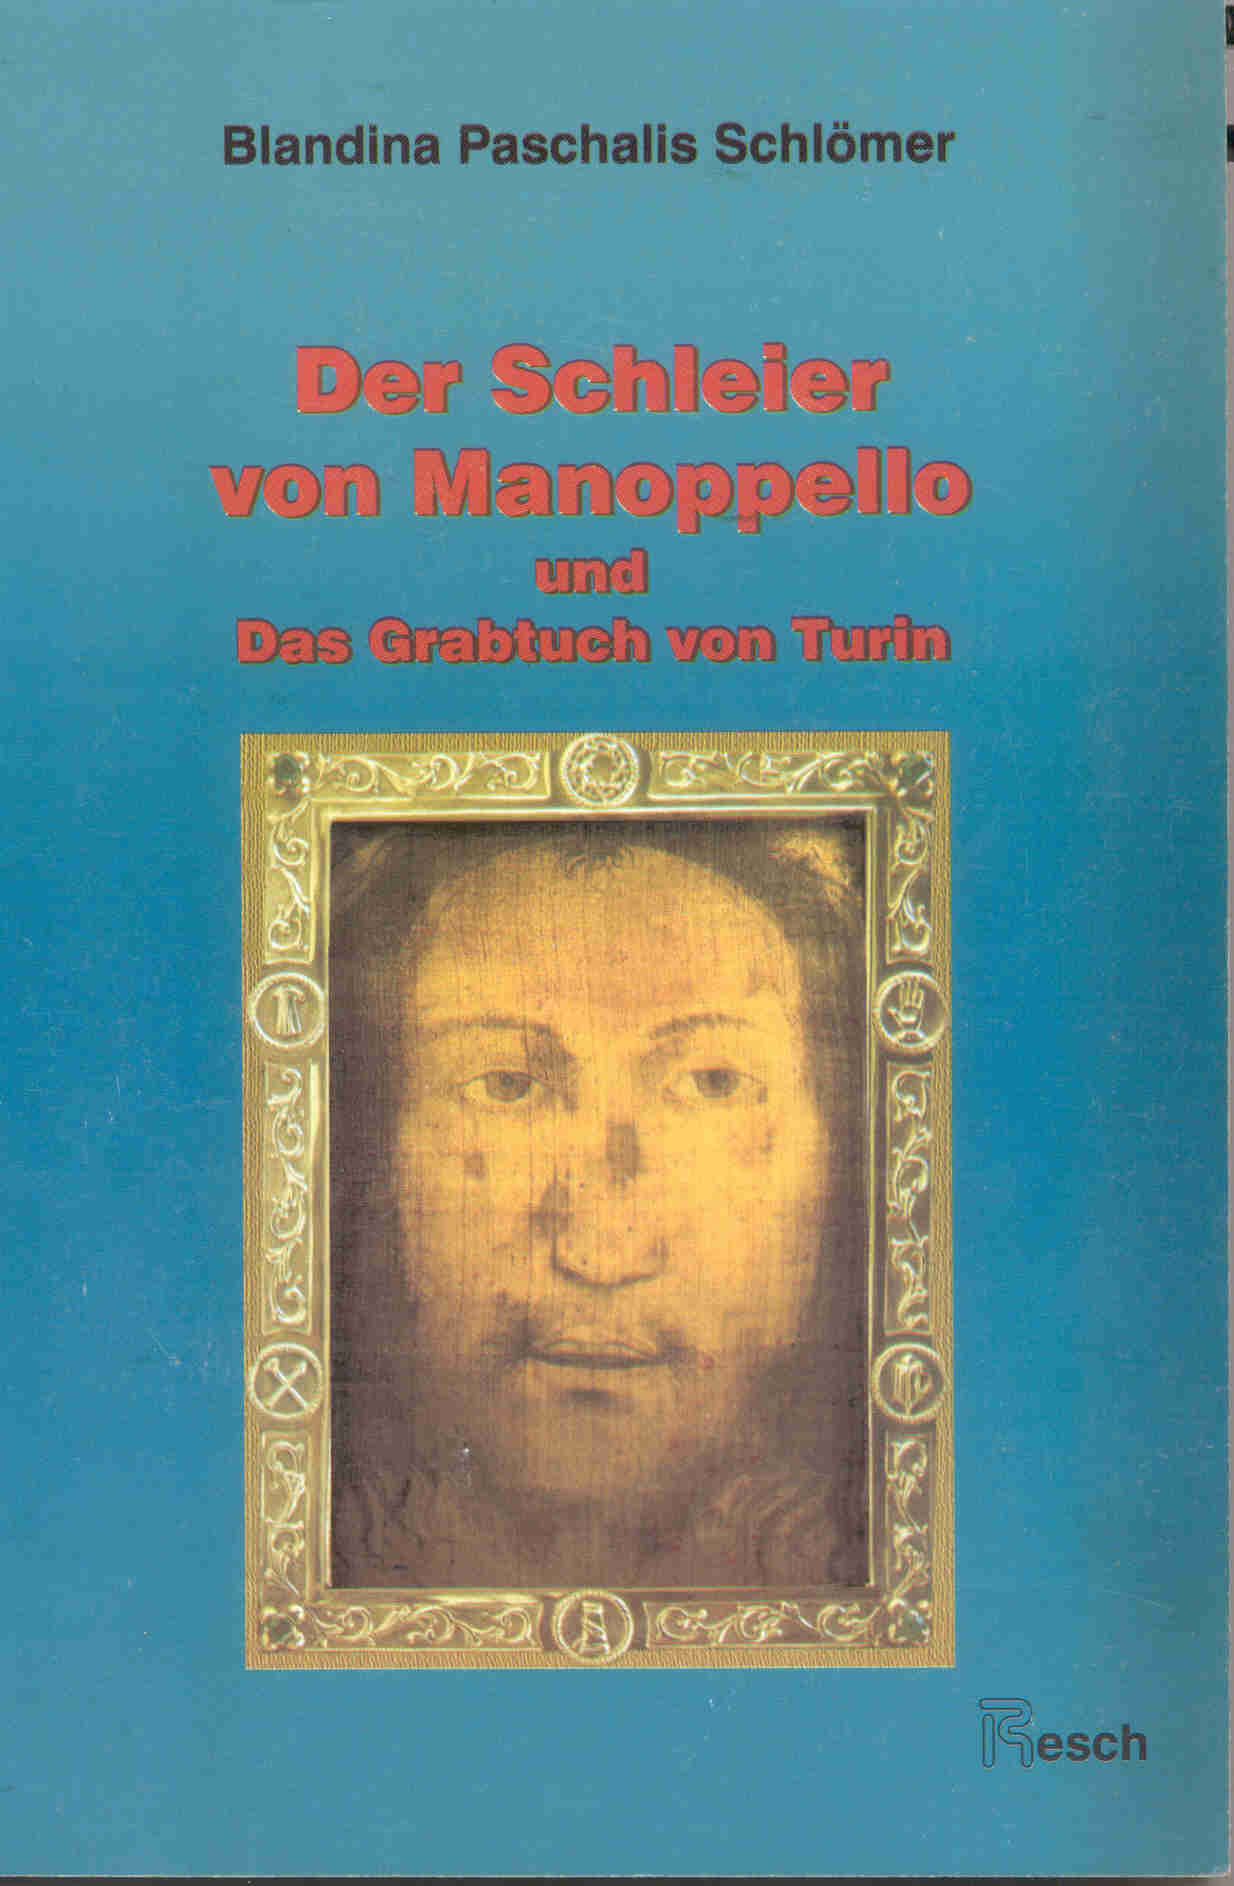 Schloemer_Buch_book_Rueckseite_backcover